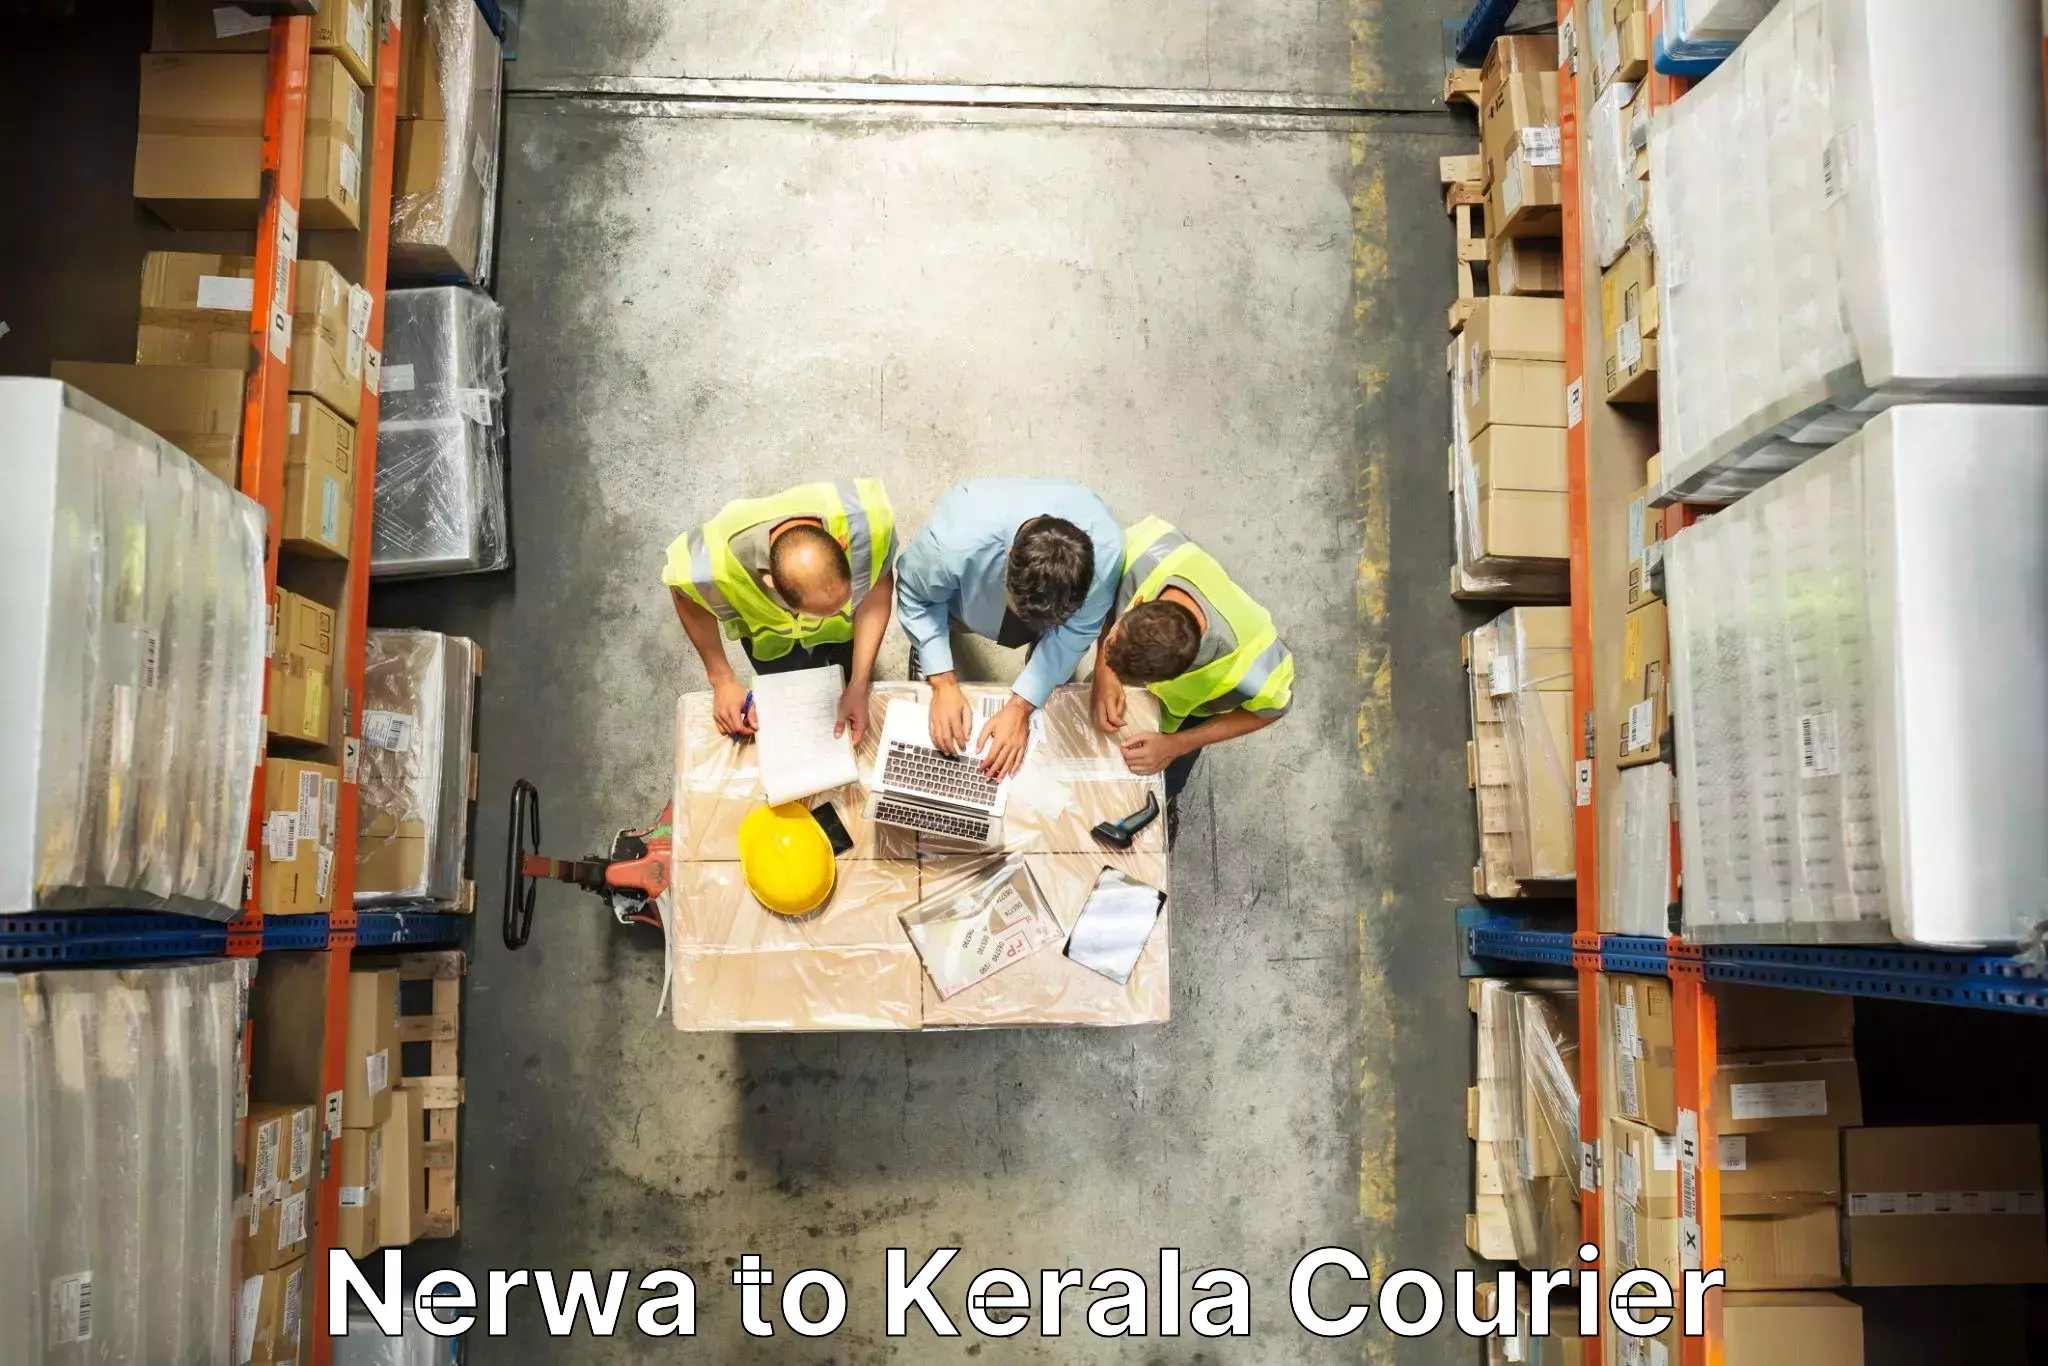 Furniture transport experts Nerwa to Kerala